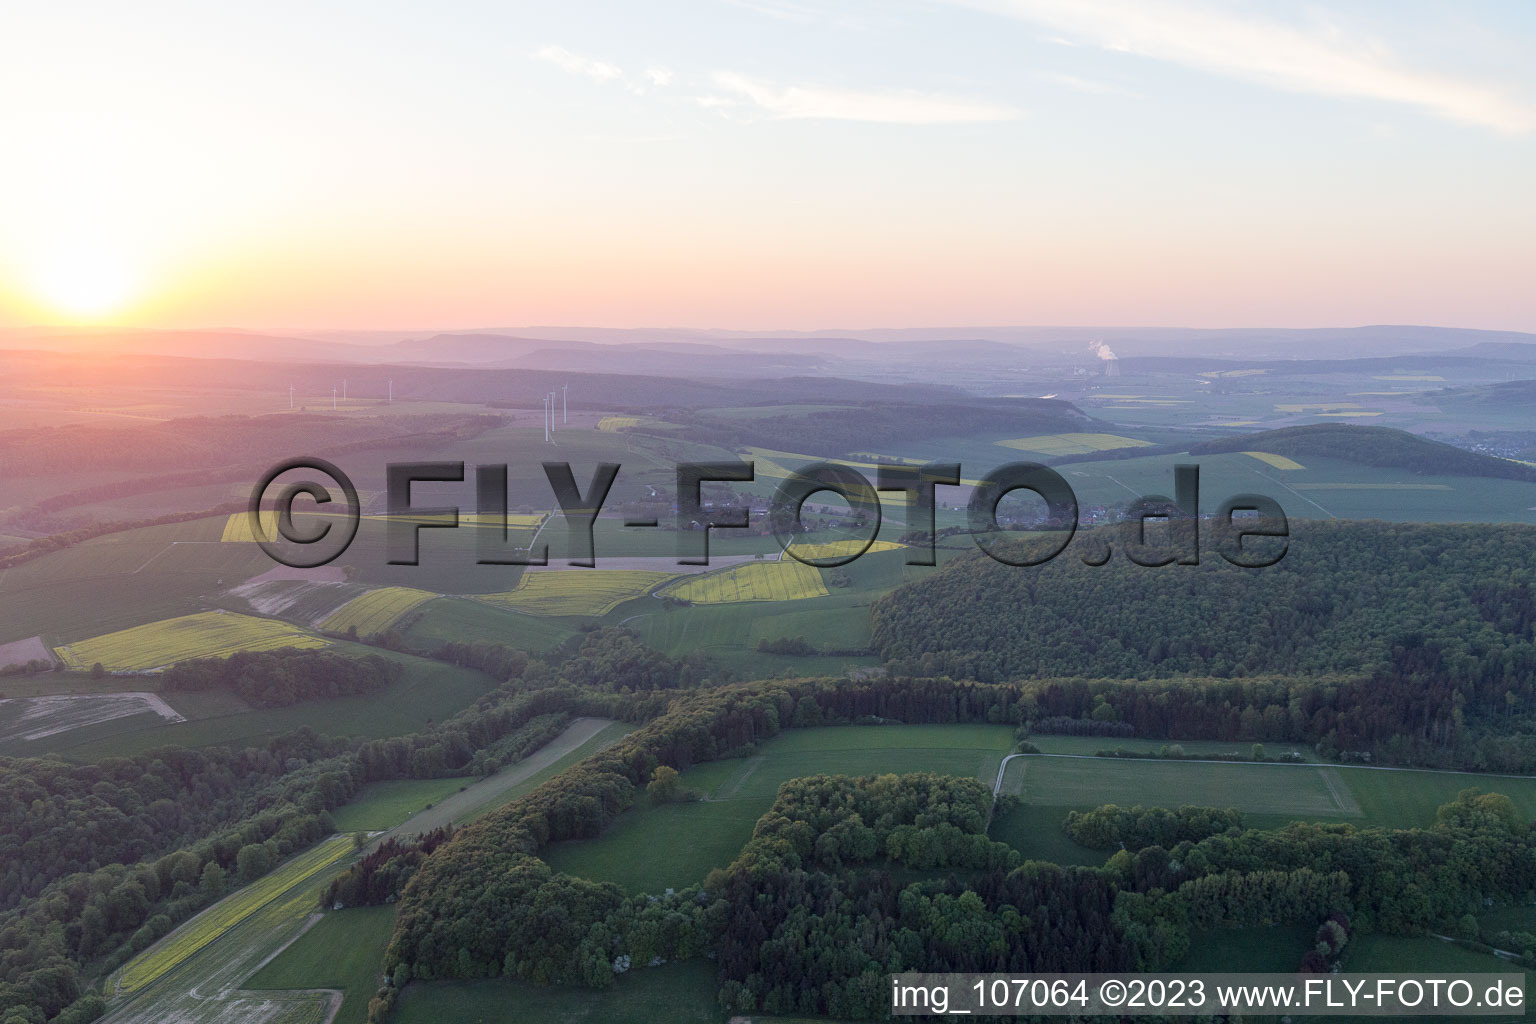 Vue aérienne de Hohe dans le département Basse-Saxe, Allemagne